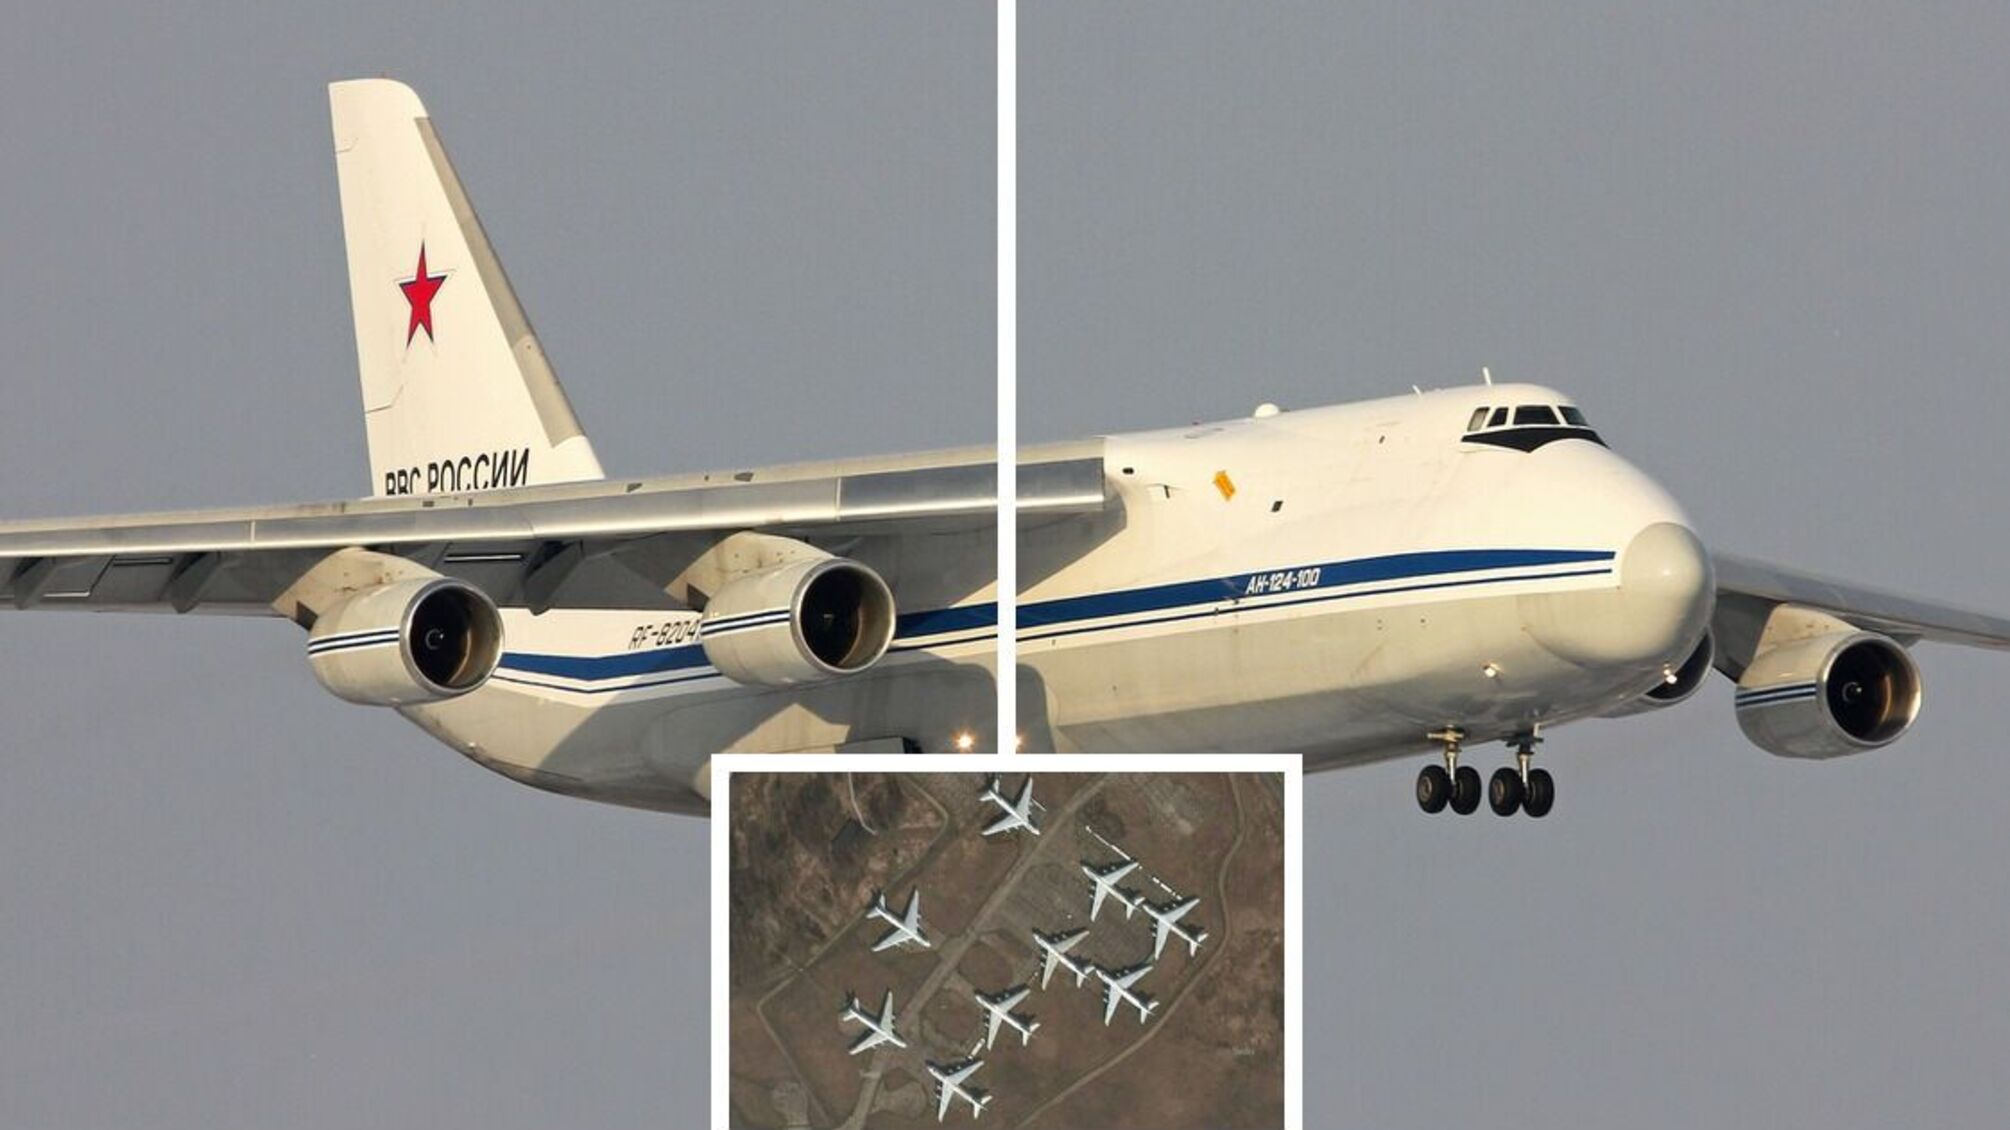 Транспортный самолет Ан-124 активно используется армией рф